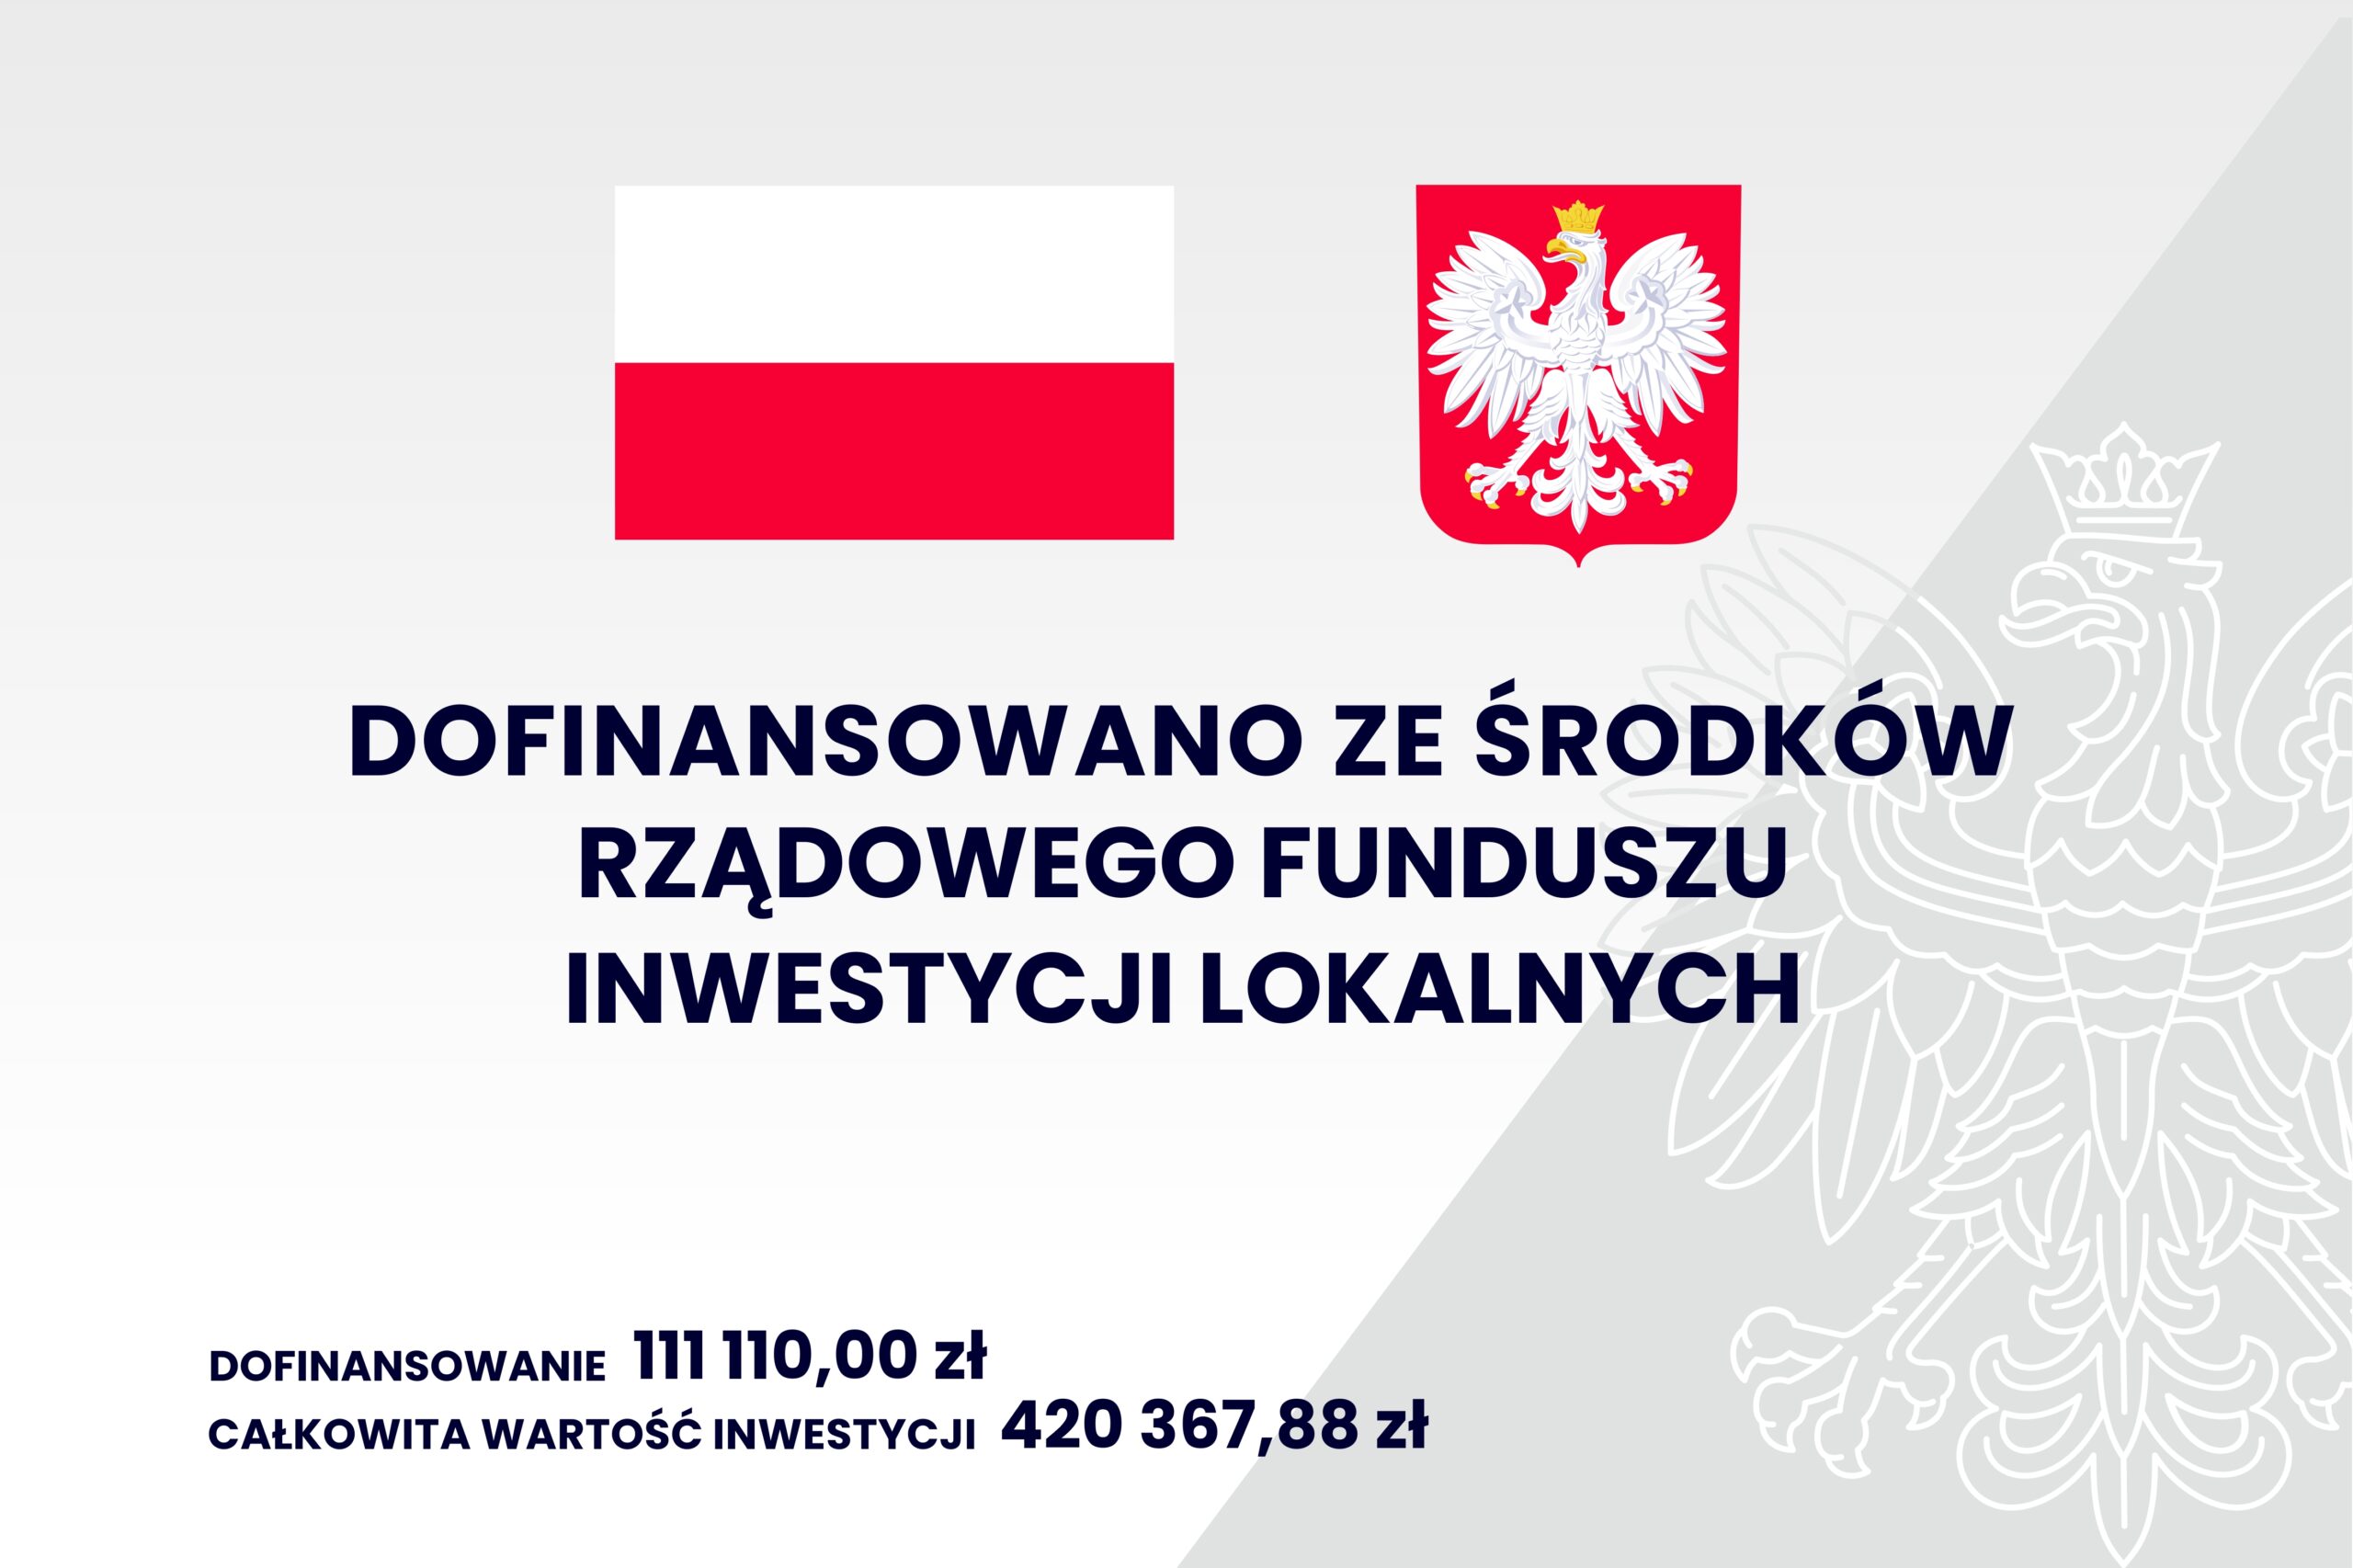 Grafika przedstawia informacje: dofinansowano ze środków rządowego funduszu inwestycji lokalnych; dofinansowanie - 111 110,00 zł; całkowita wartość inwestycji - 420 367,88 zł; na górze jest flaga i godło Polski